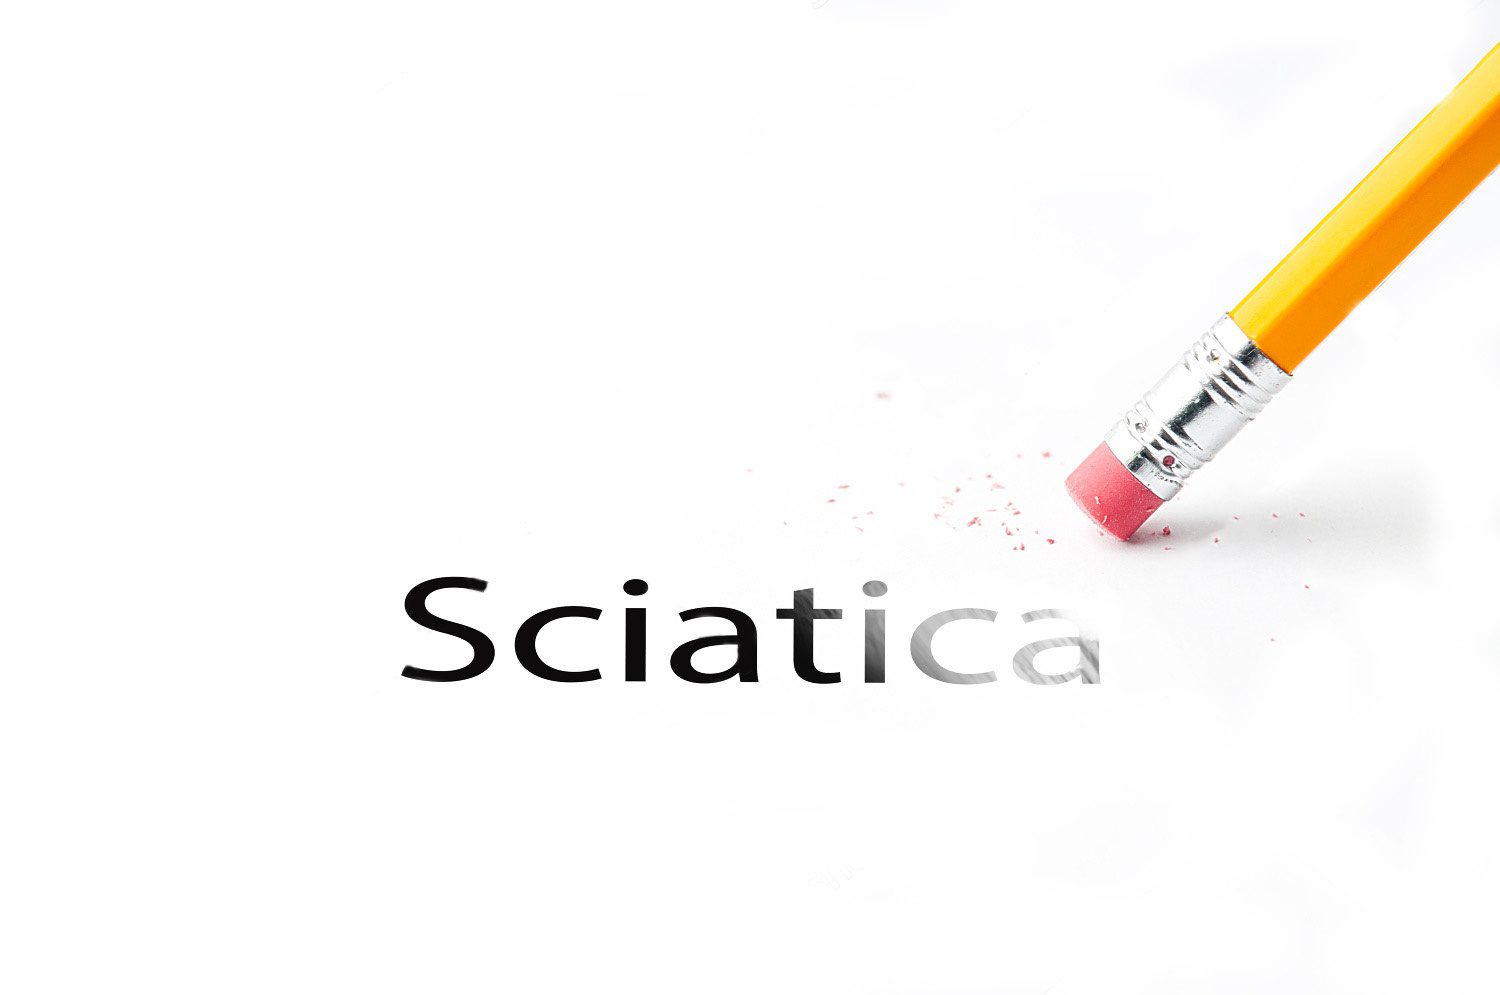 pencil erasing the word sciatica